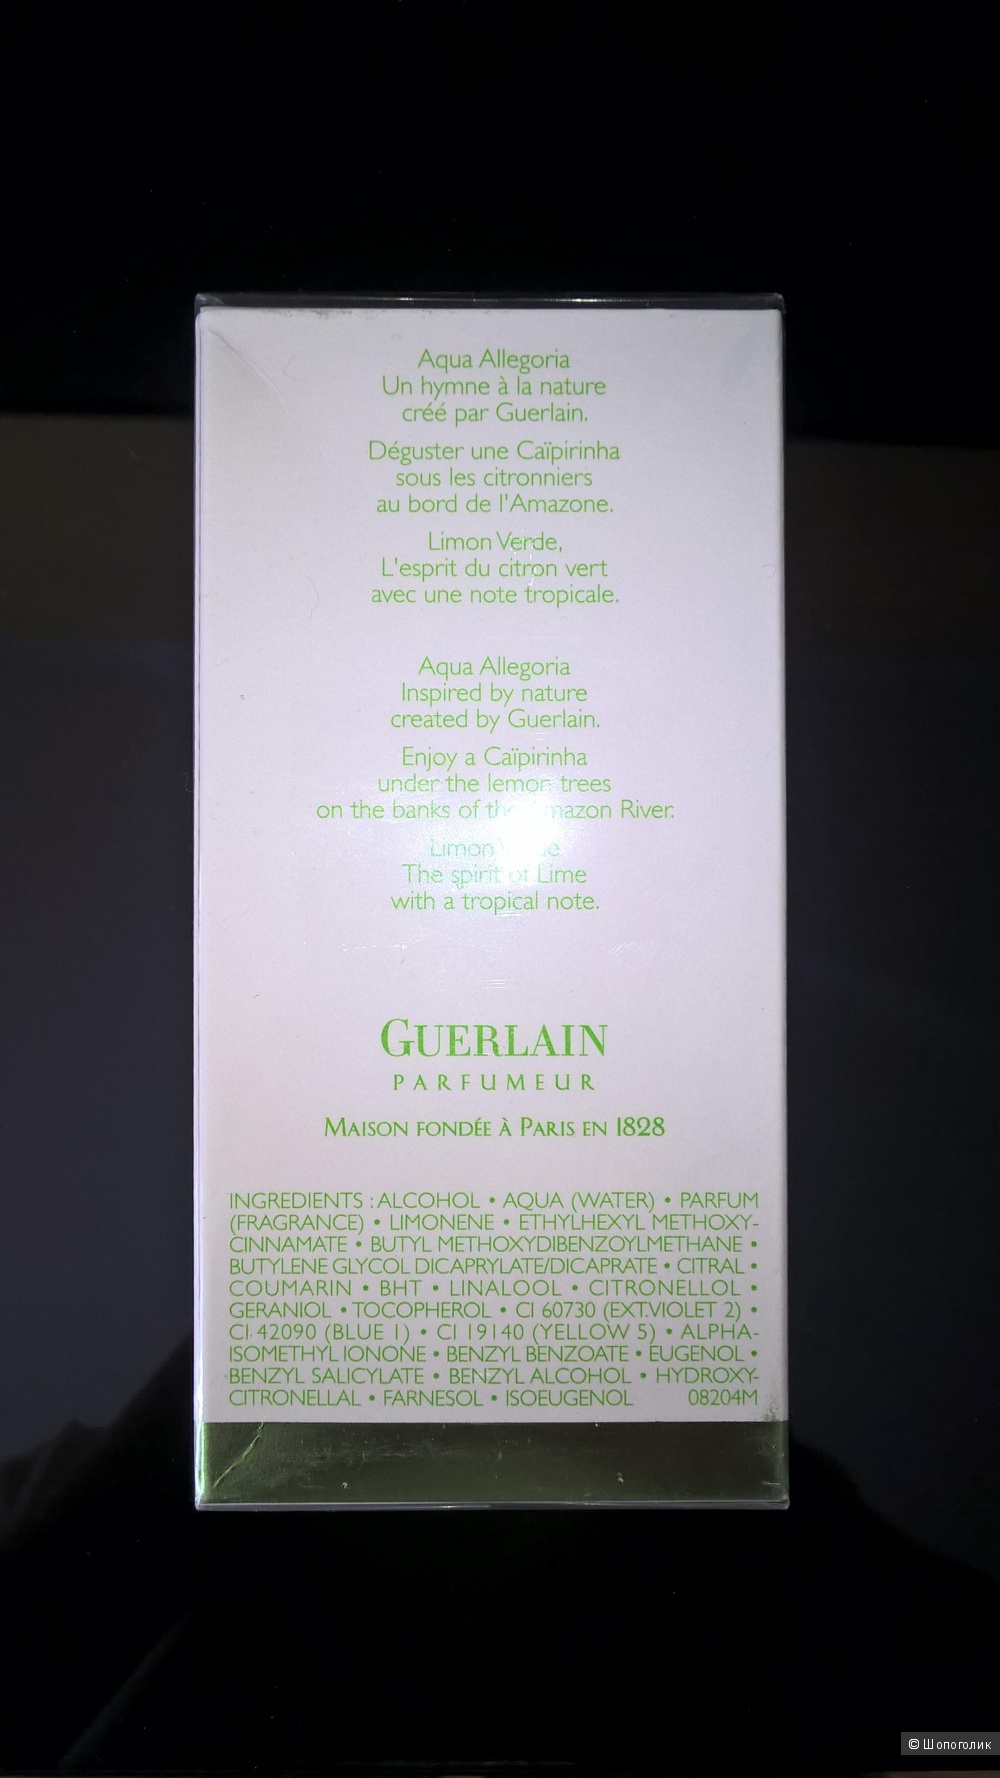 Туалетная вода Guerlain Aqua Allegoria Limon Verde 100 мл новая запечатанная в слюде